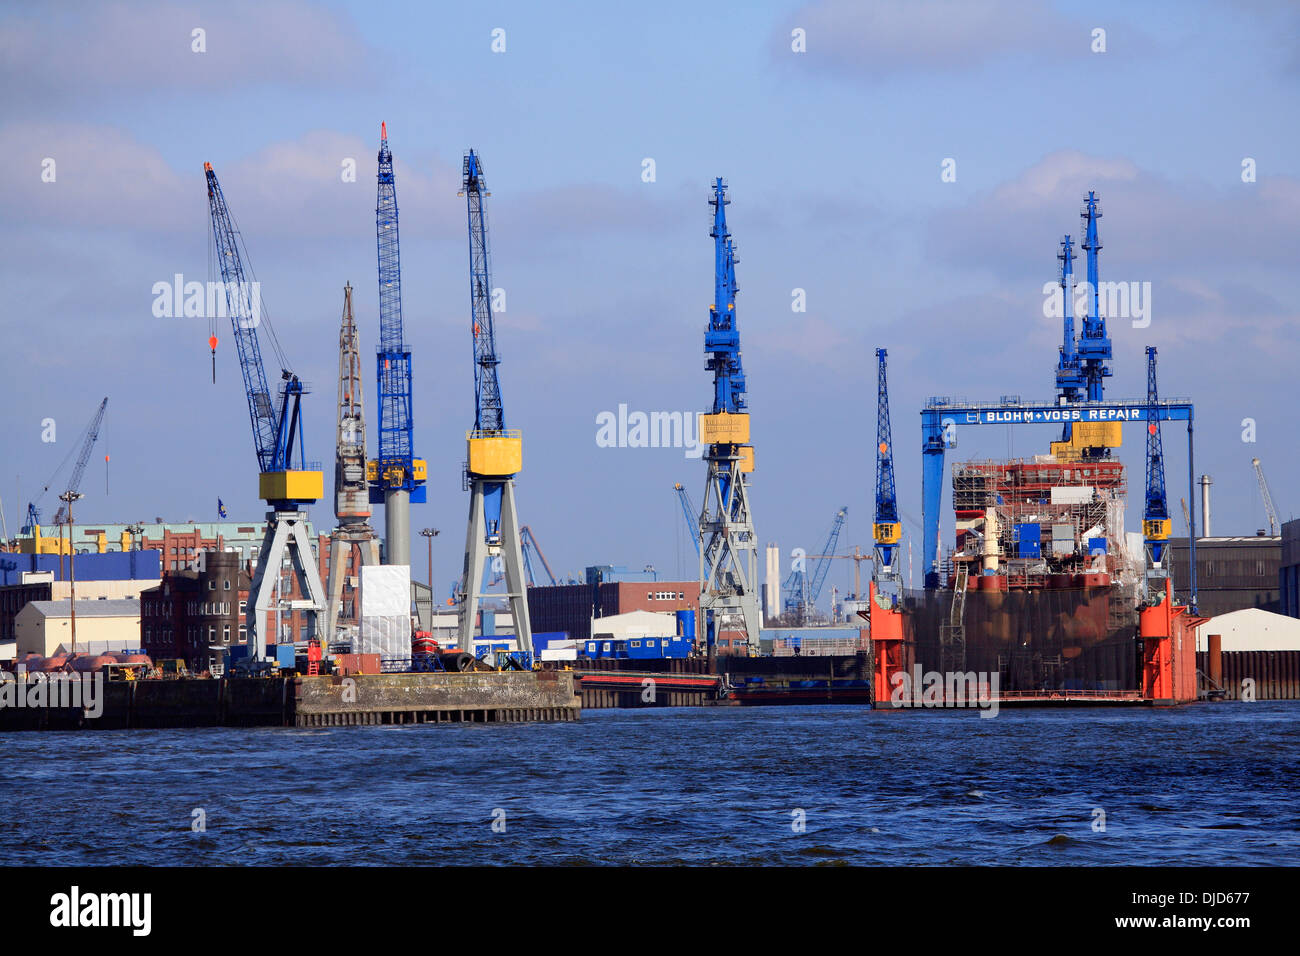 dock at port of Hamburg, Germany Stock Photo